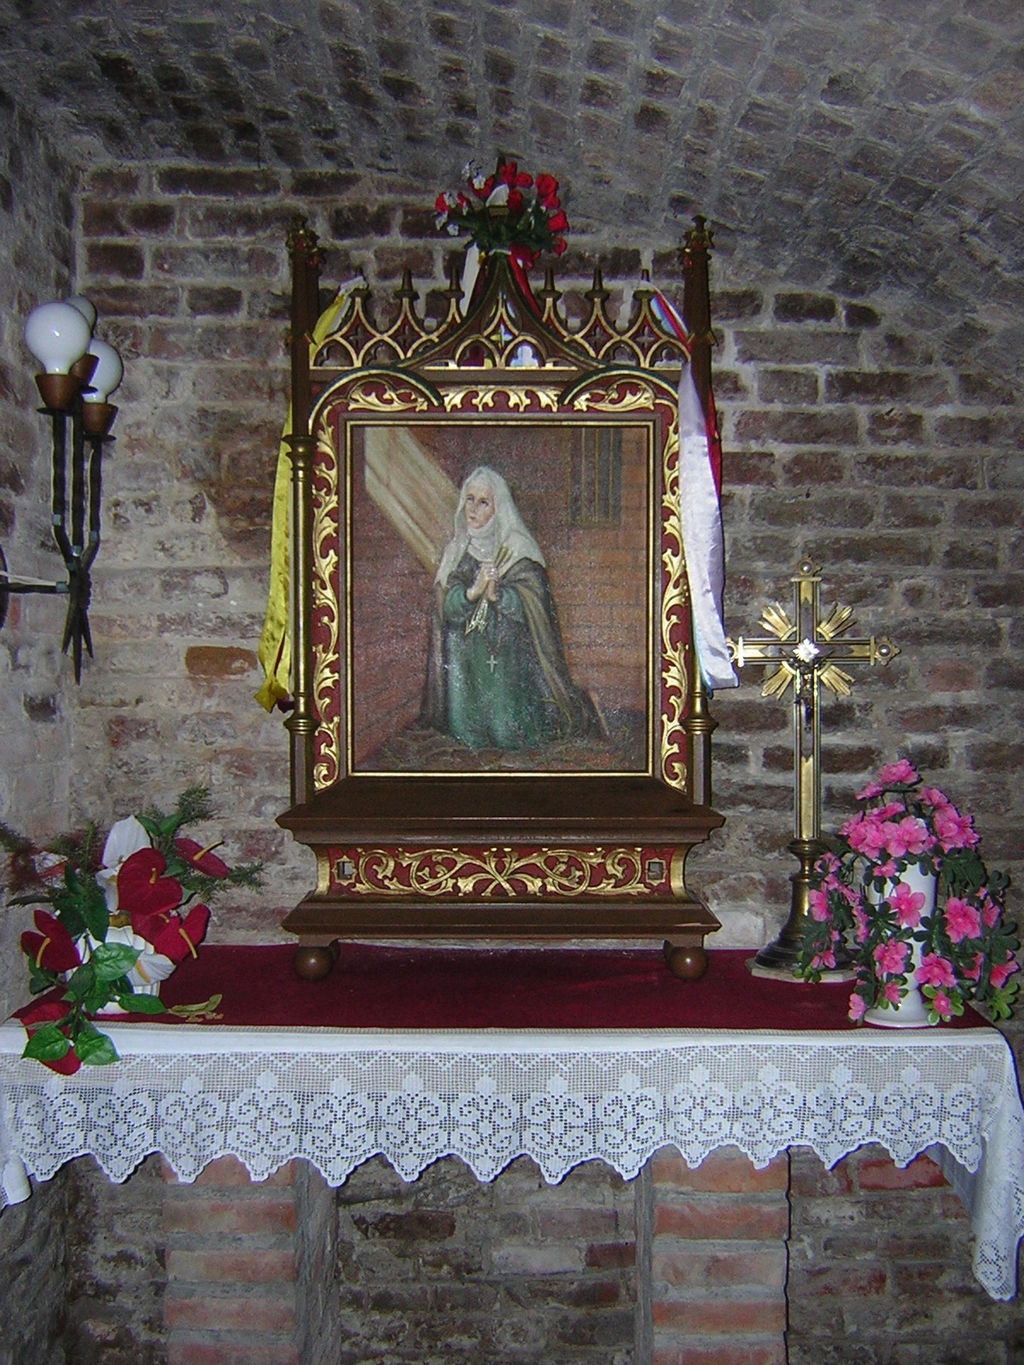 Auf dem Bild sieht man auf einem Altar abgebildet das Bildnis der Dorothea von Montau, die kniend und betend dargestellt ist. Der Altar befindet sich in der Pfarrkirche in Marienwerder.